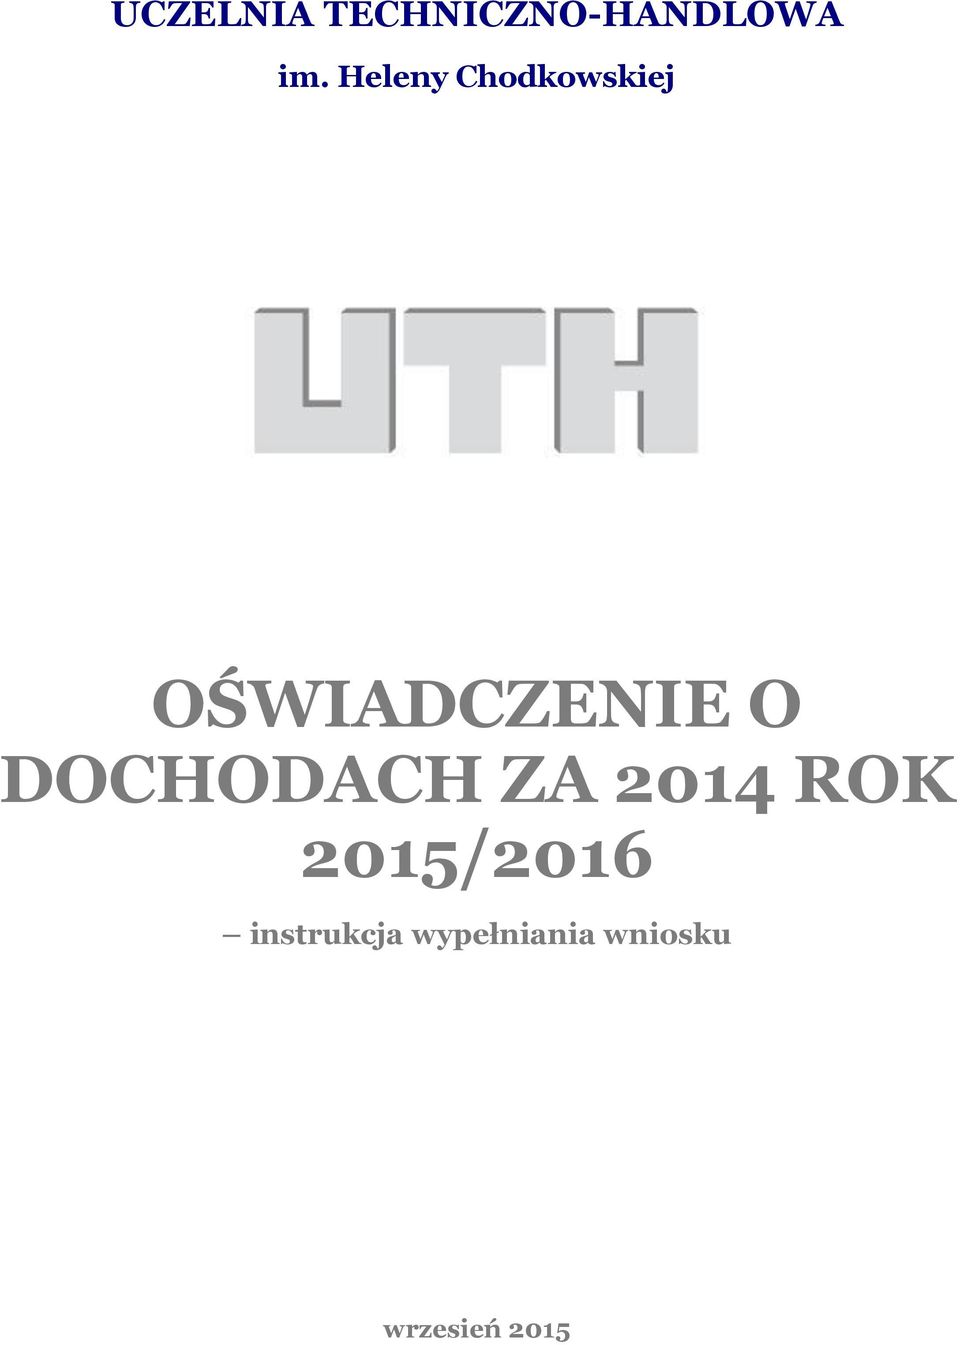 DOCHODACH ZA 2014 ROK 2015/2016